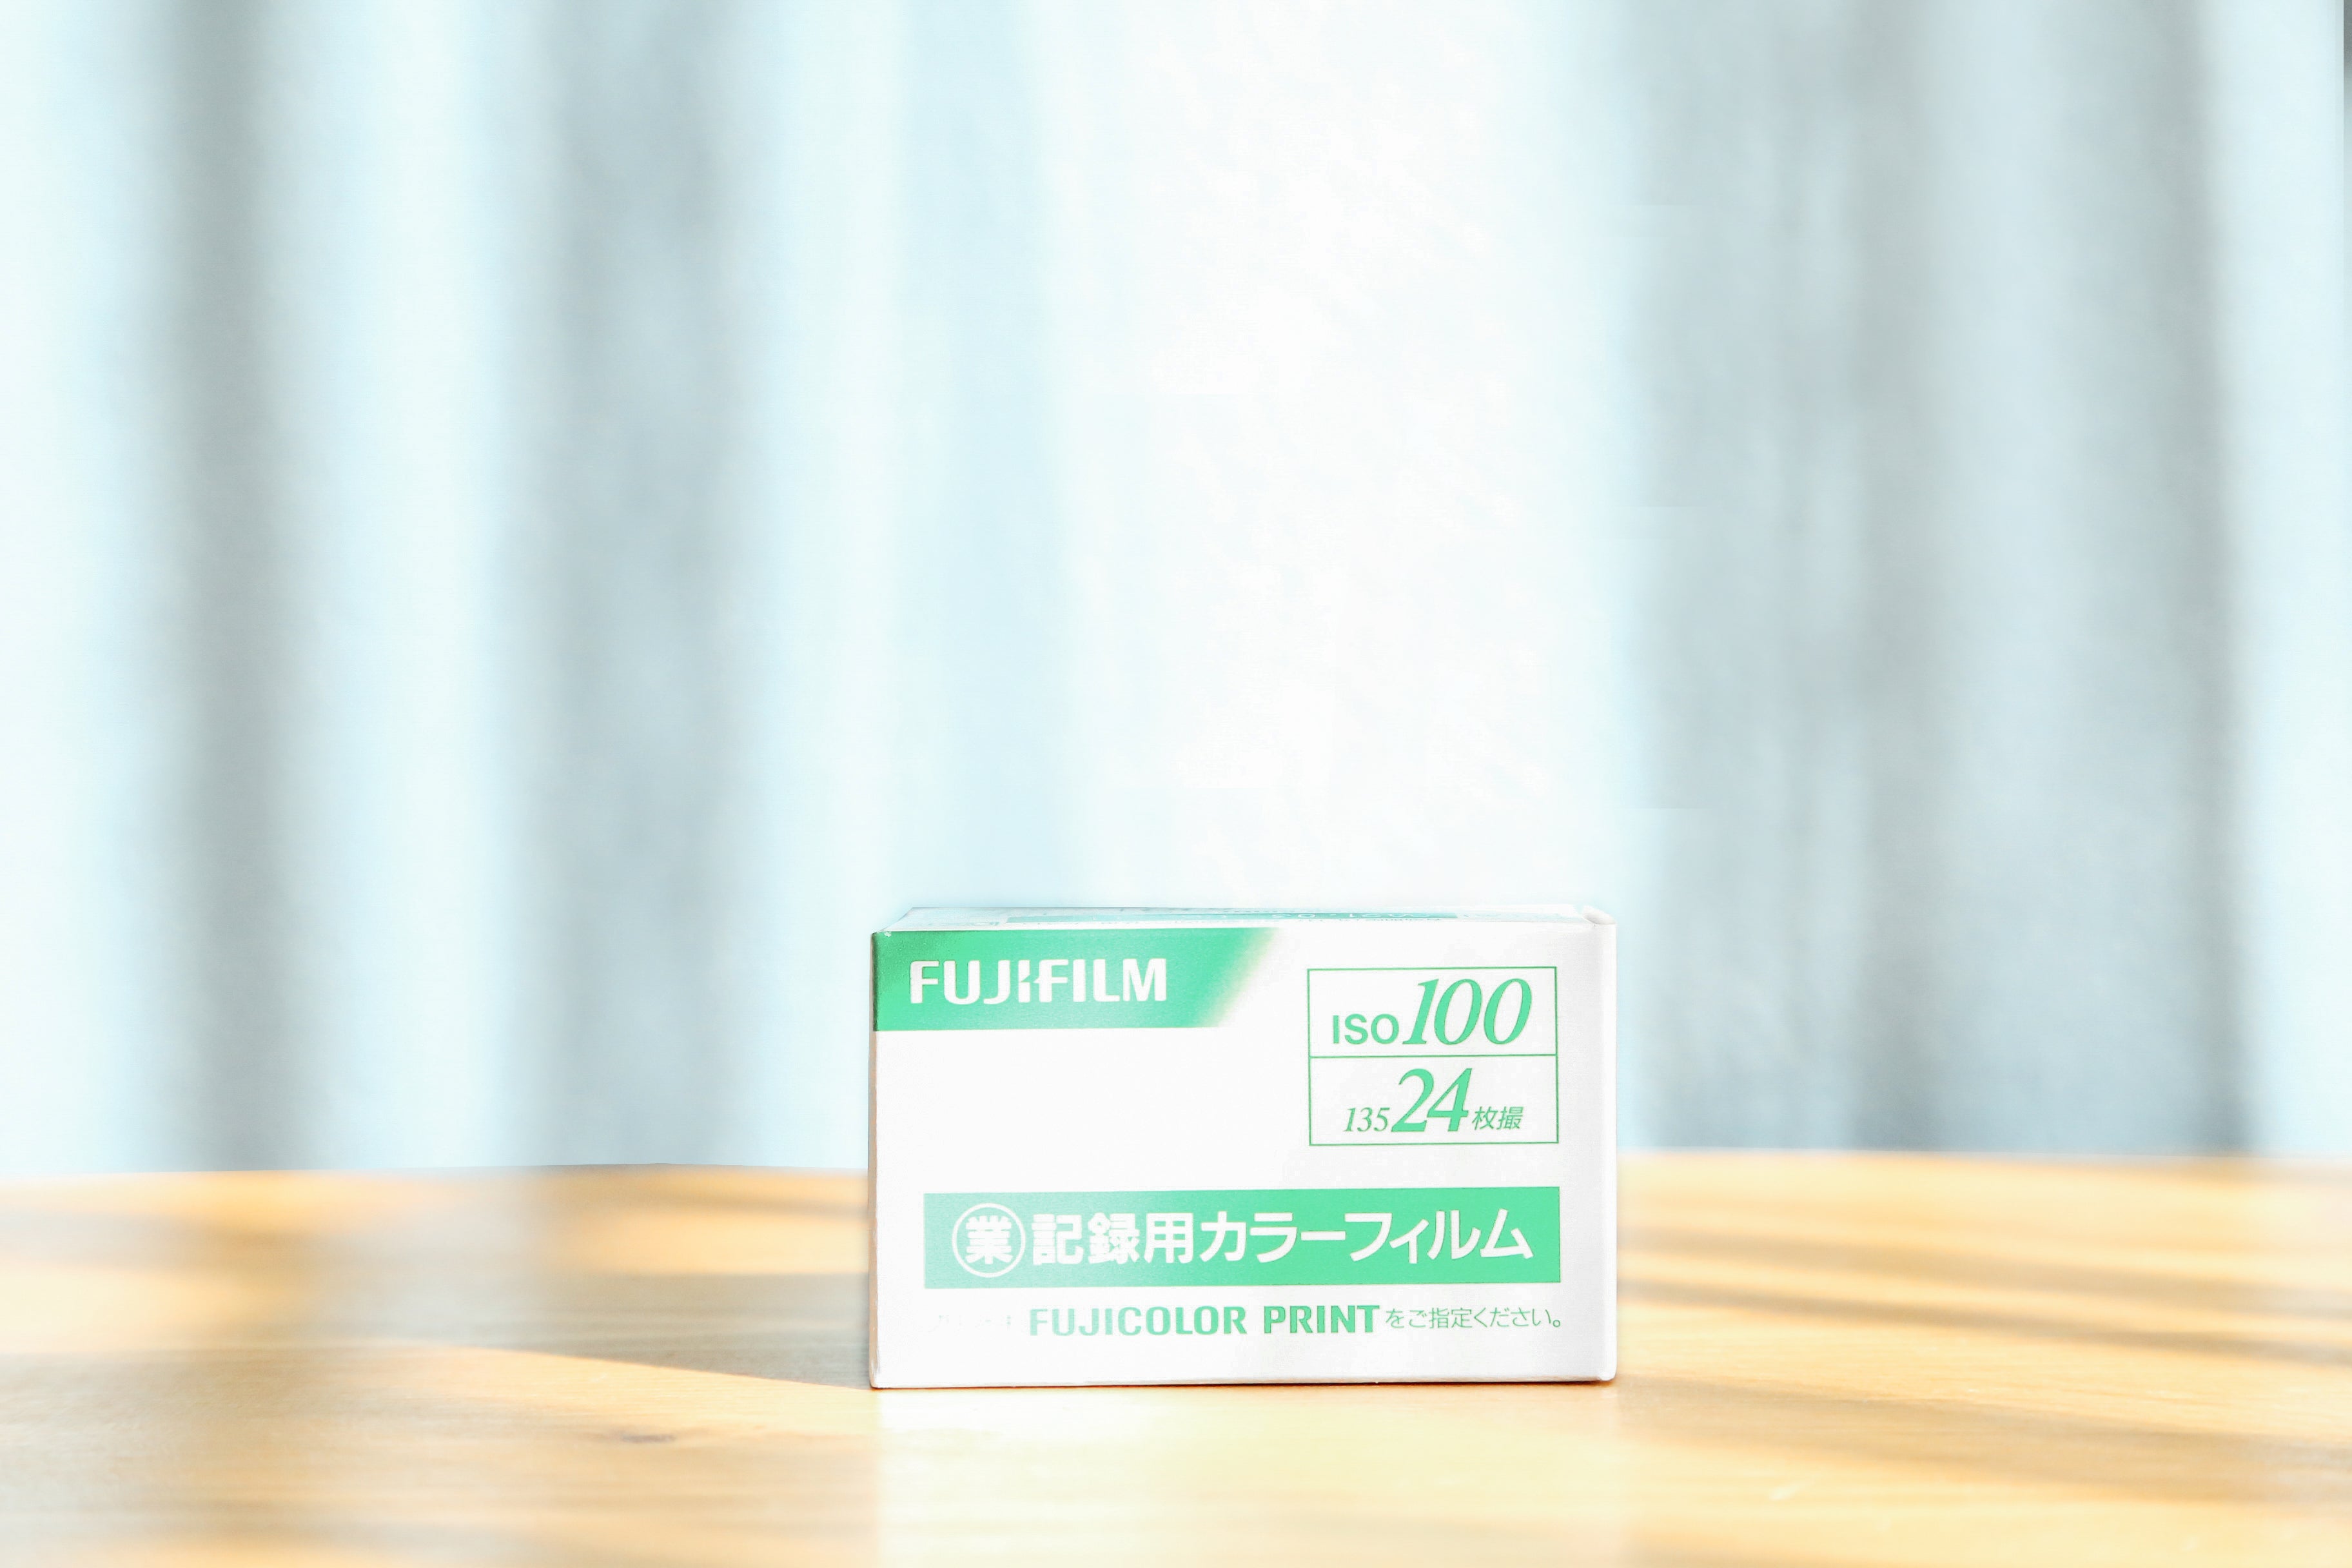 FUJIFILM 業務用フィルム100 (35mmフィルム) 24枚撮り カラーネガ